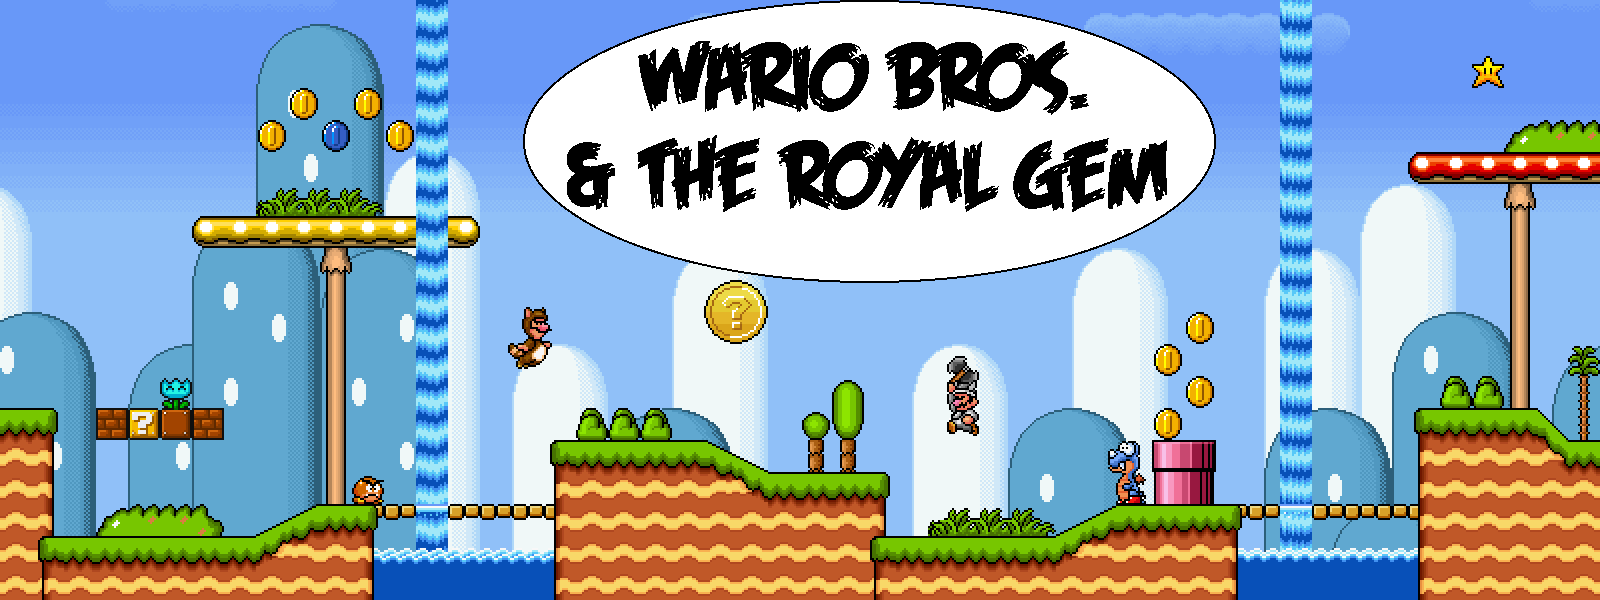 Wario Bros The Royal Gem Demo 1 Super Mario Bros X Forums